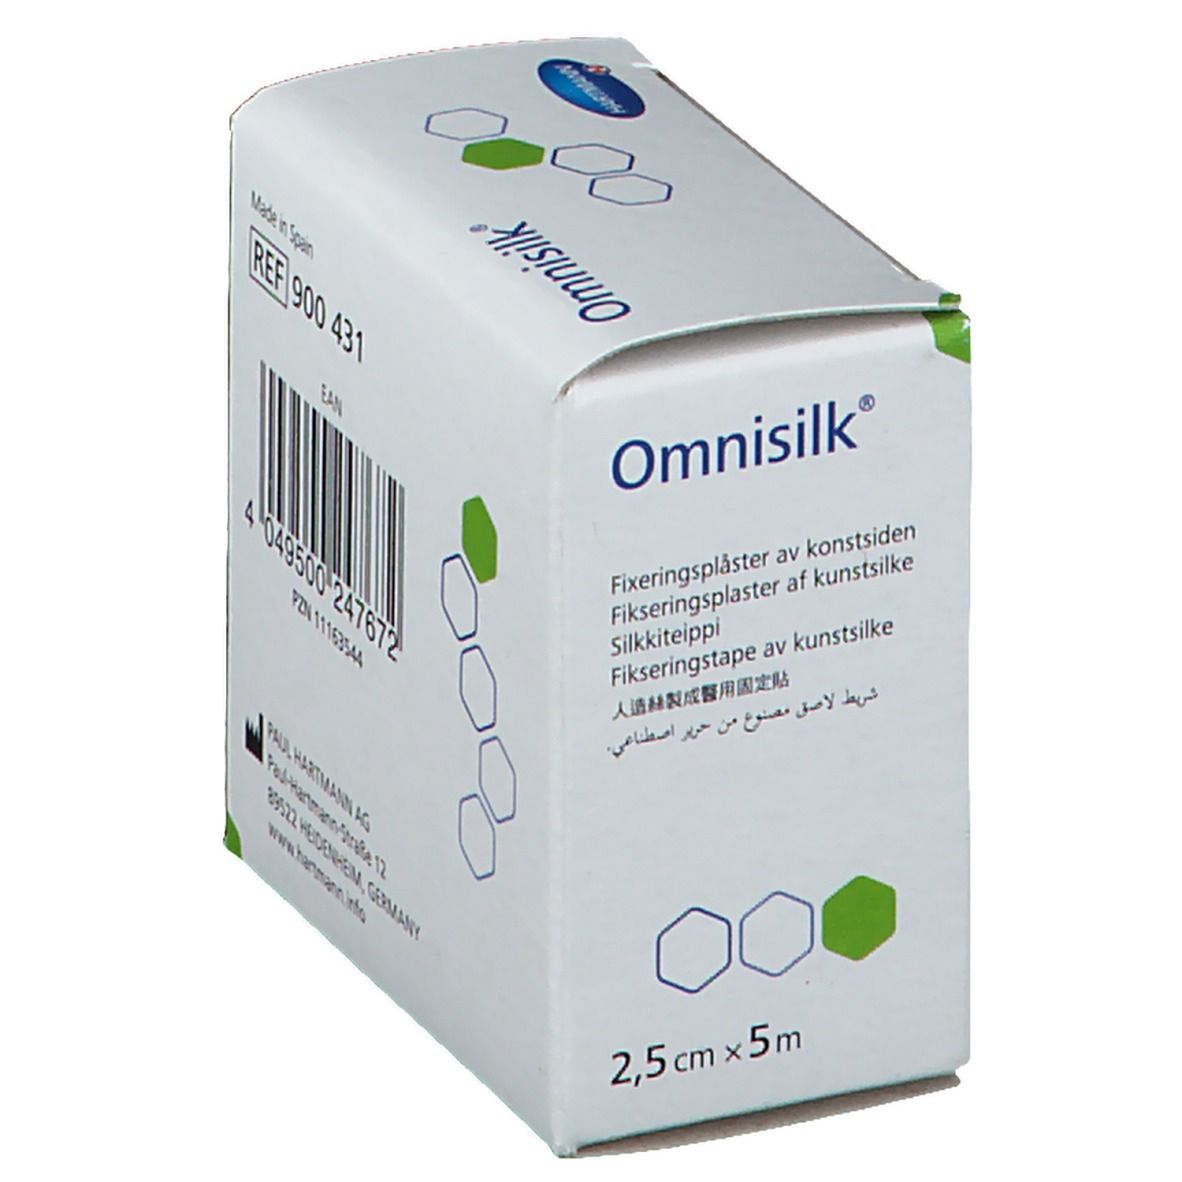 Omnisilk® Fixierpflaster 2,5 cm x 5 m